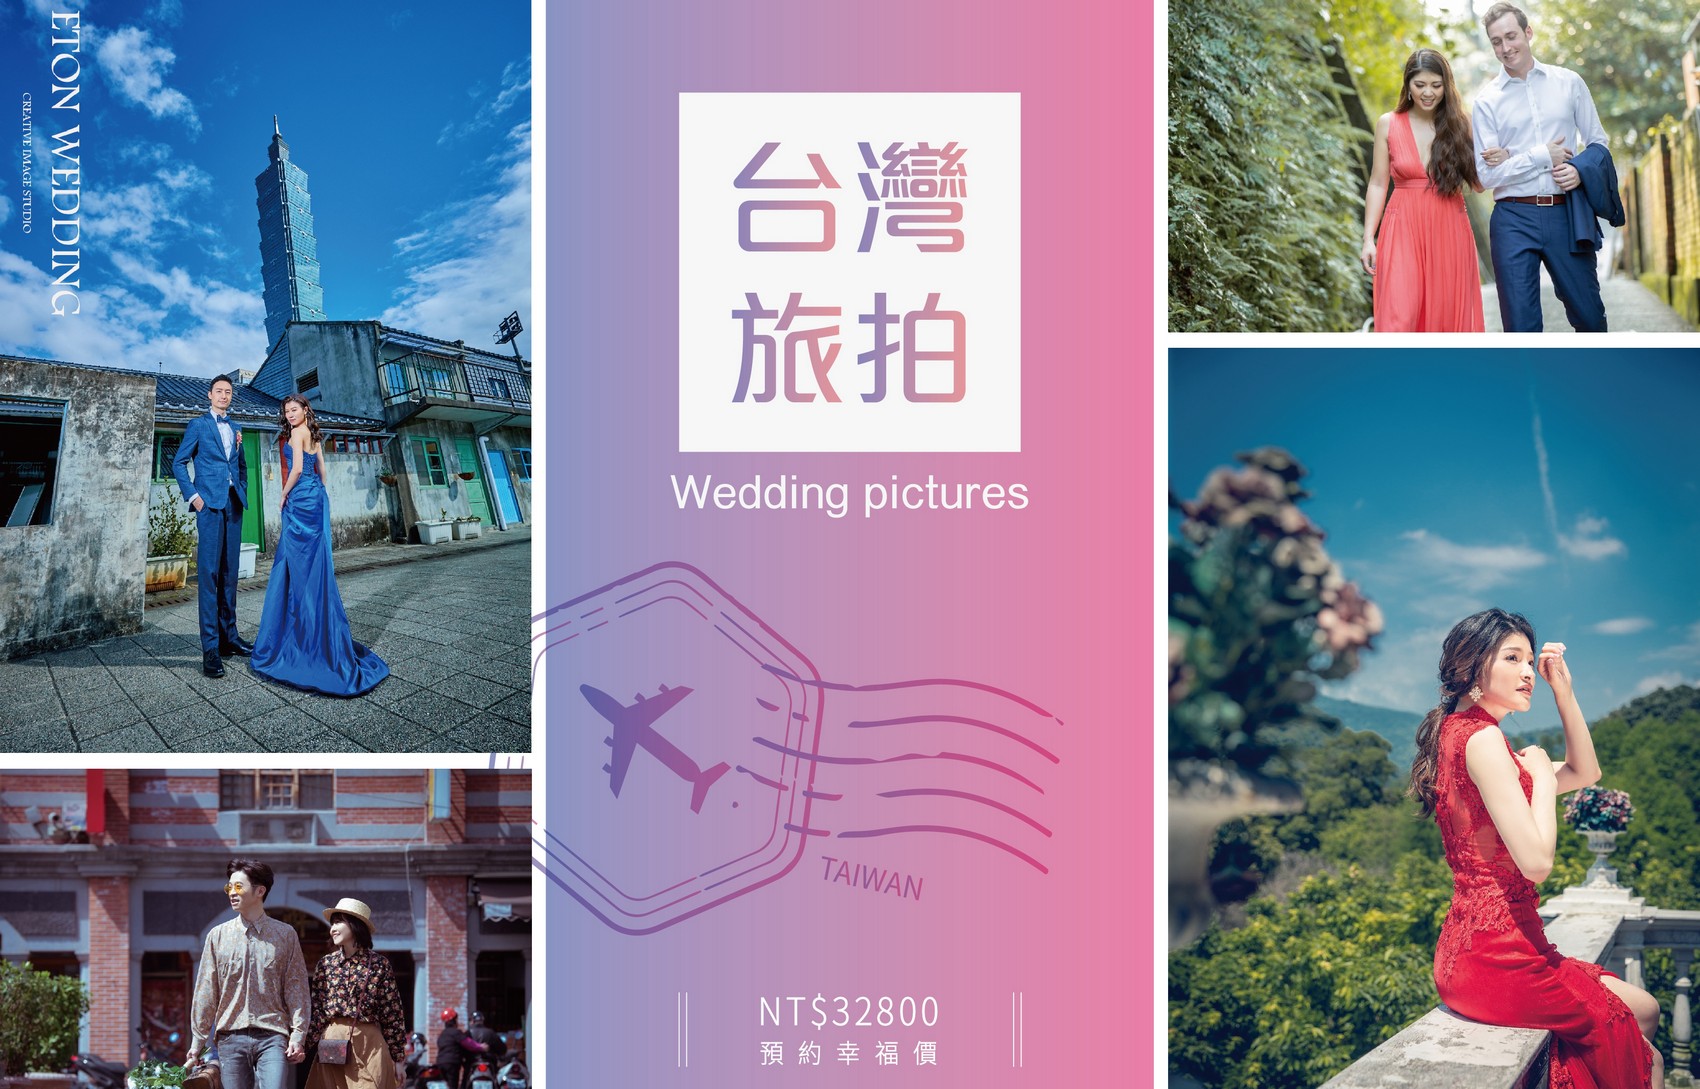 台灣 婚紗工作室,台灣 婚紗攝影價格,台南拍婚紗,台南 婚紗攝影,台南 婚紗工作室